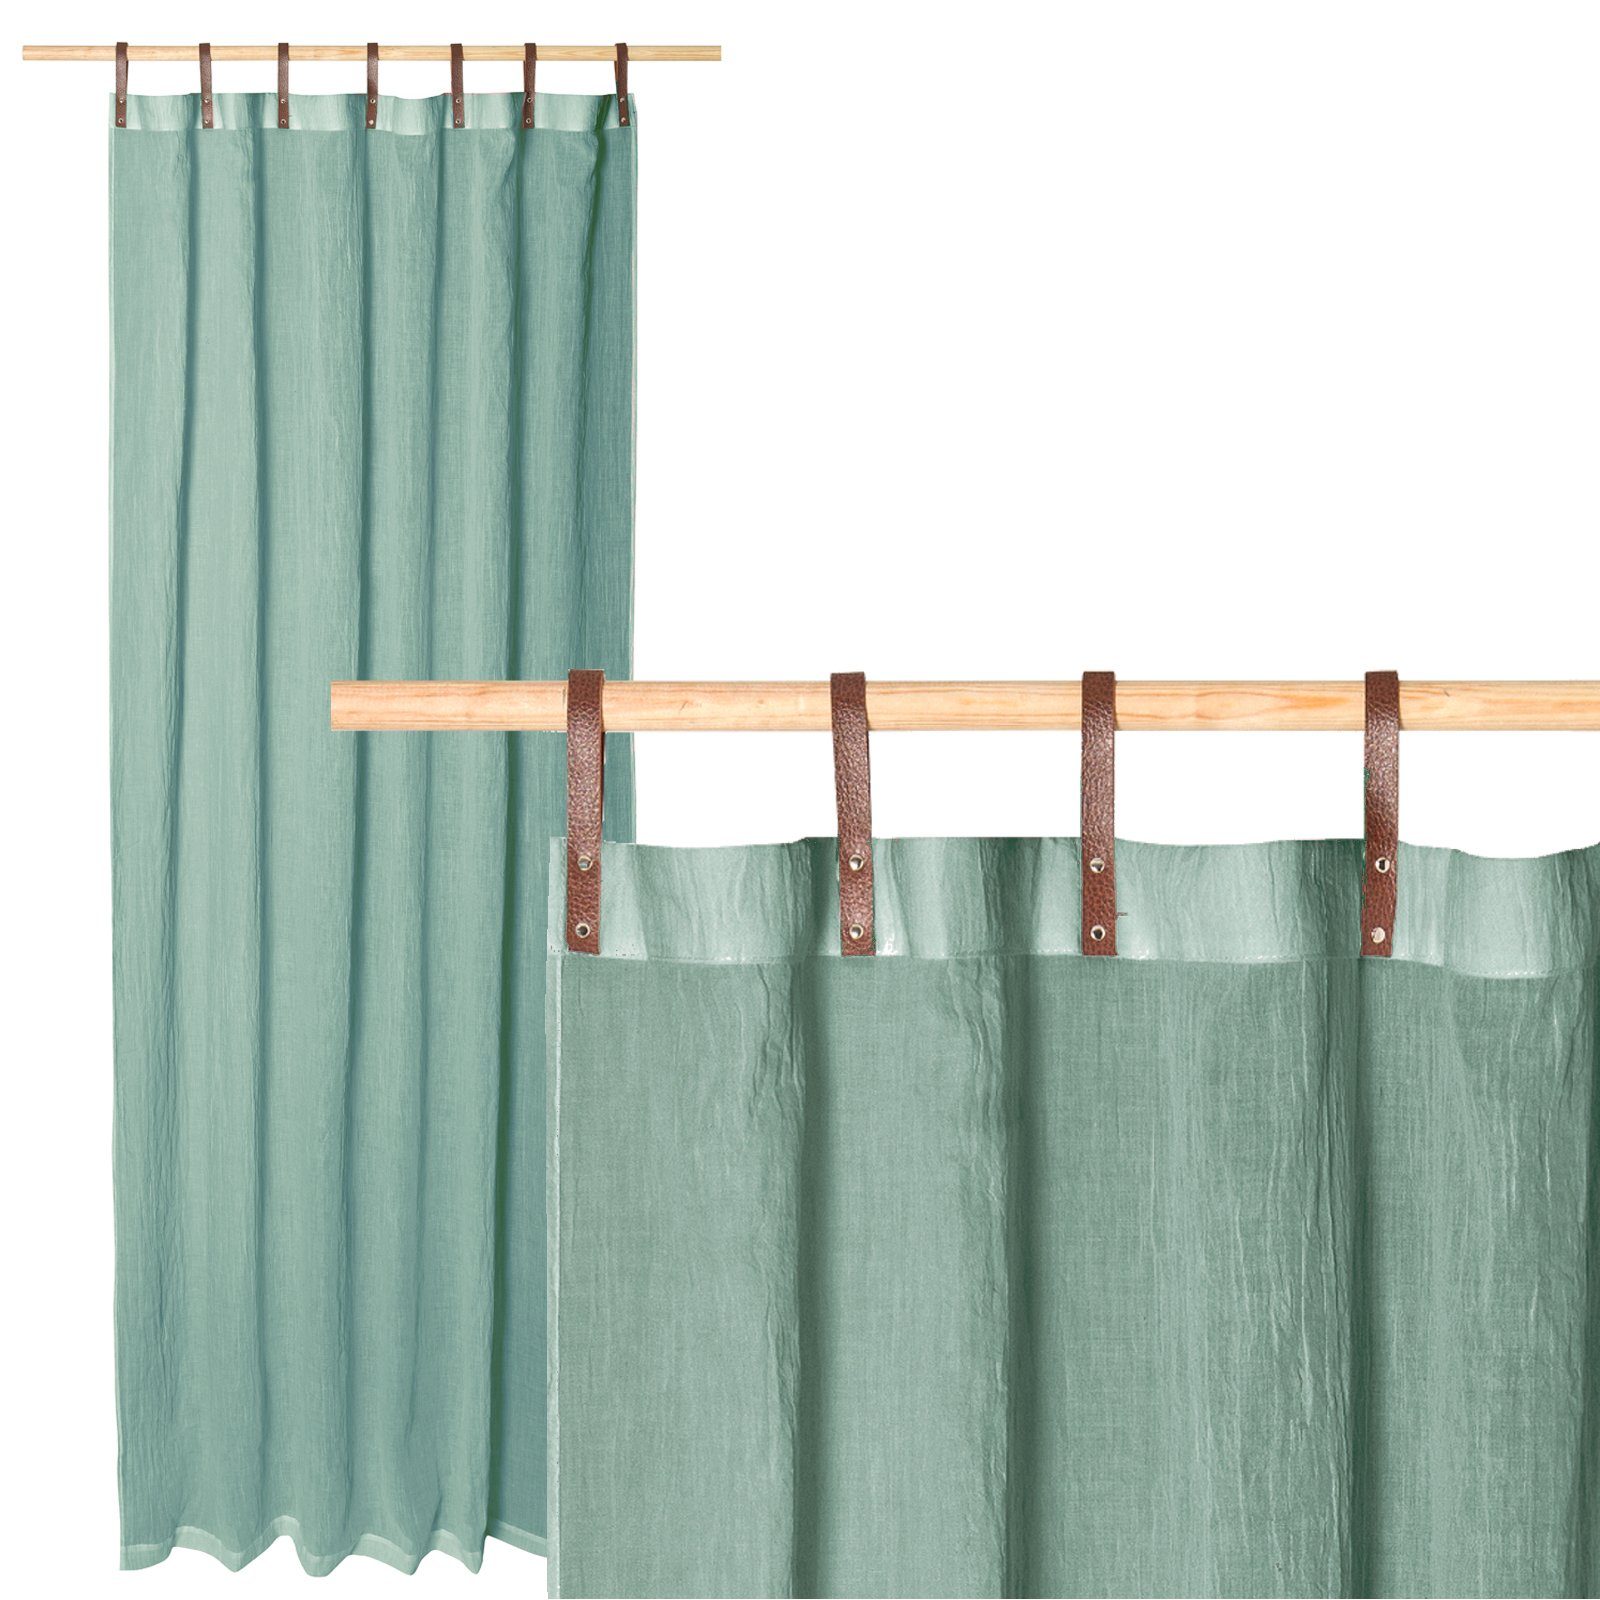 Vorhang Diverse Farben: Transparente Vorhänge mit Kunstleder-Schlaufen, JEMIDI Grün | Fertiggardinen